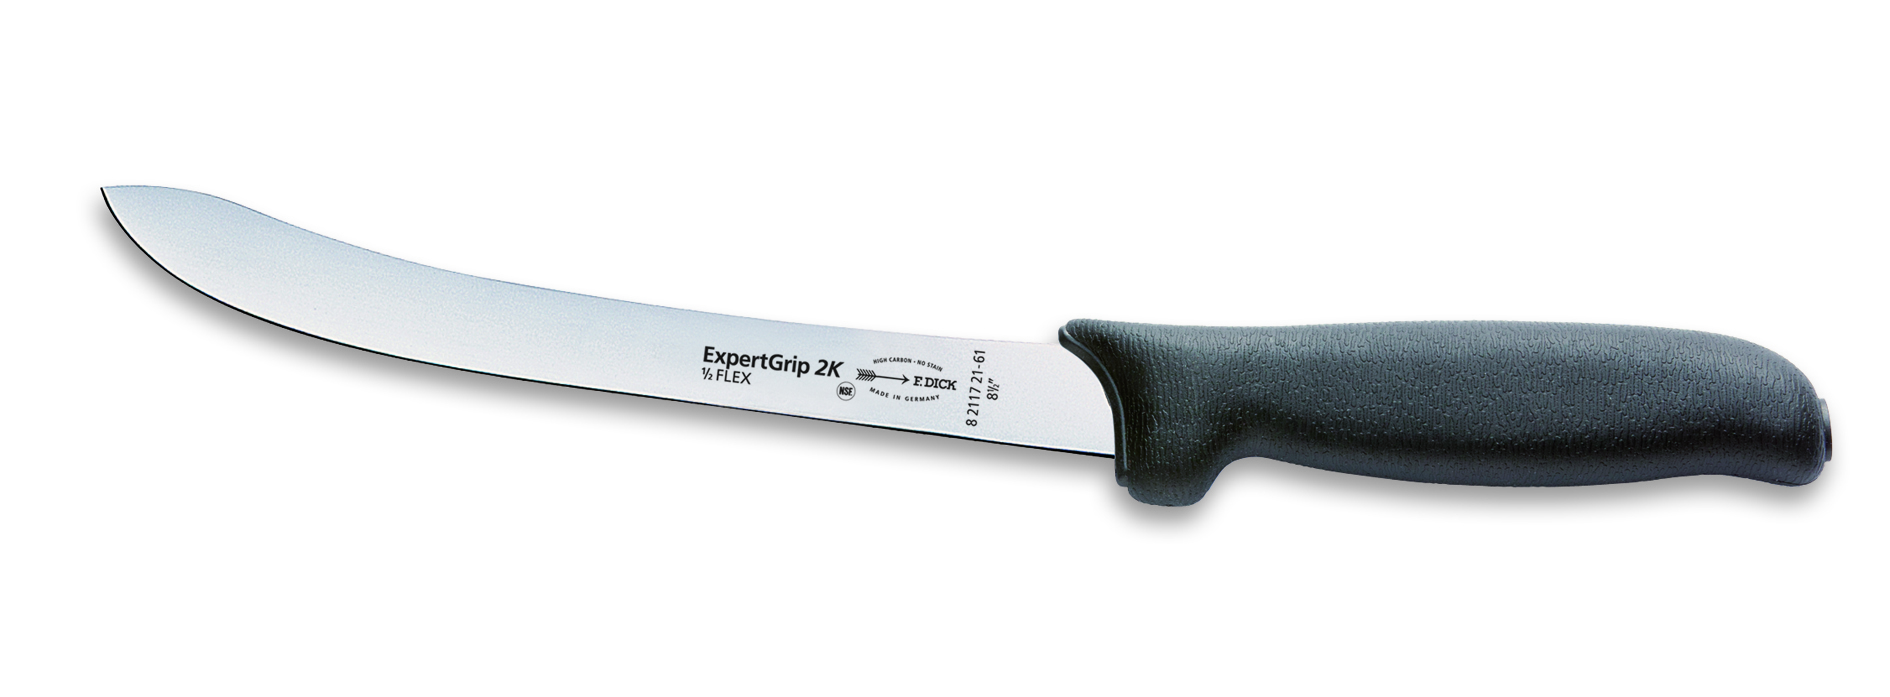 Filetovací nůž Dick poloflexibilní v délce 21 cm ze série ExpertGrip, černý